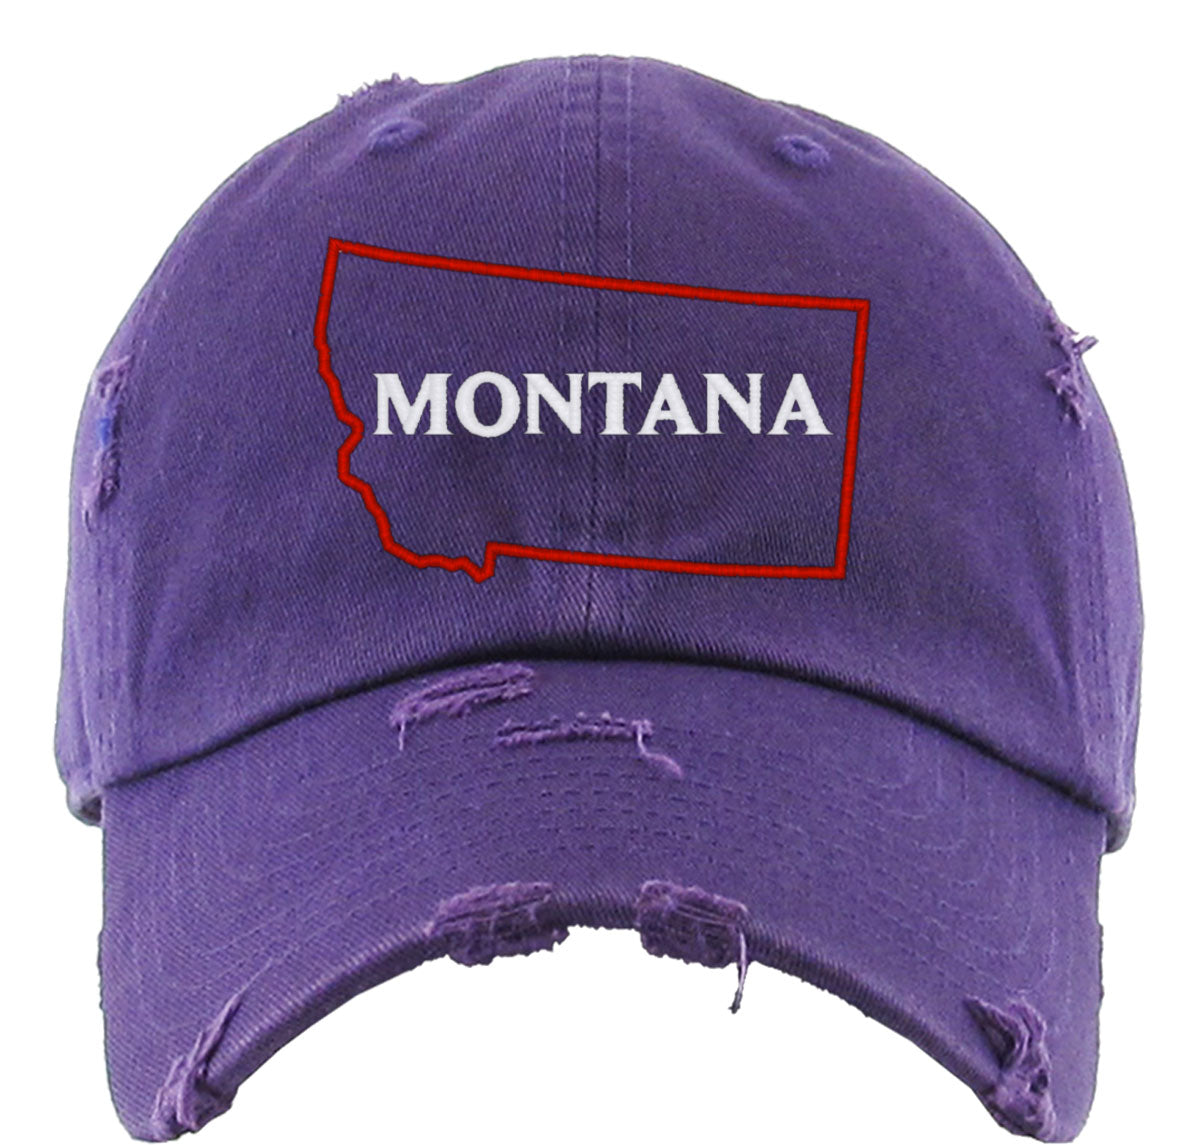 Montana Vintage Baseball Cap